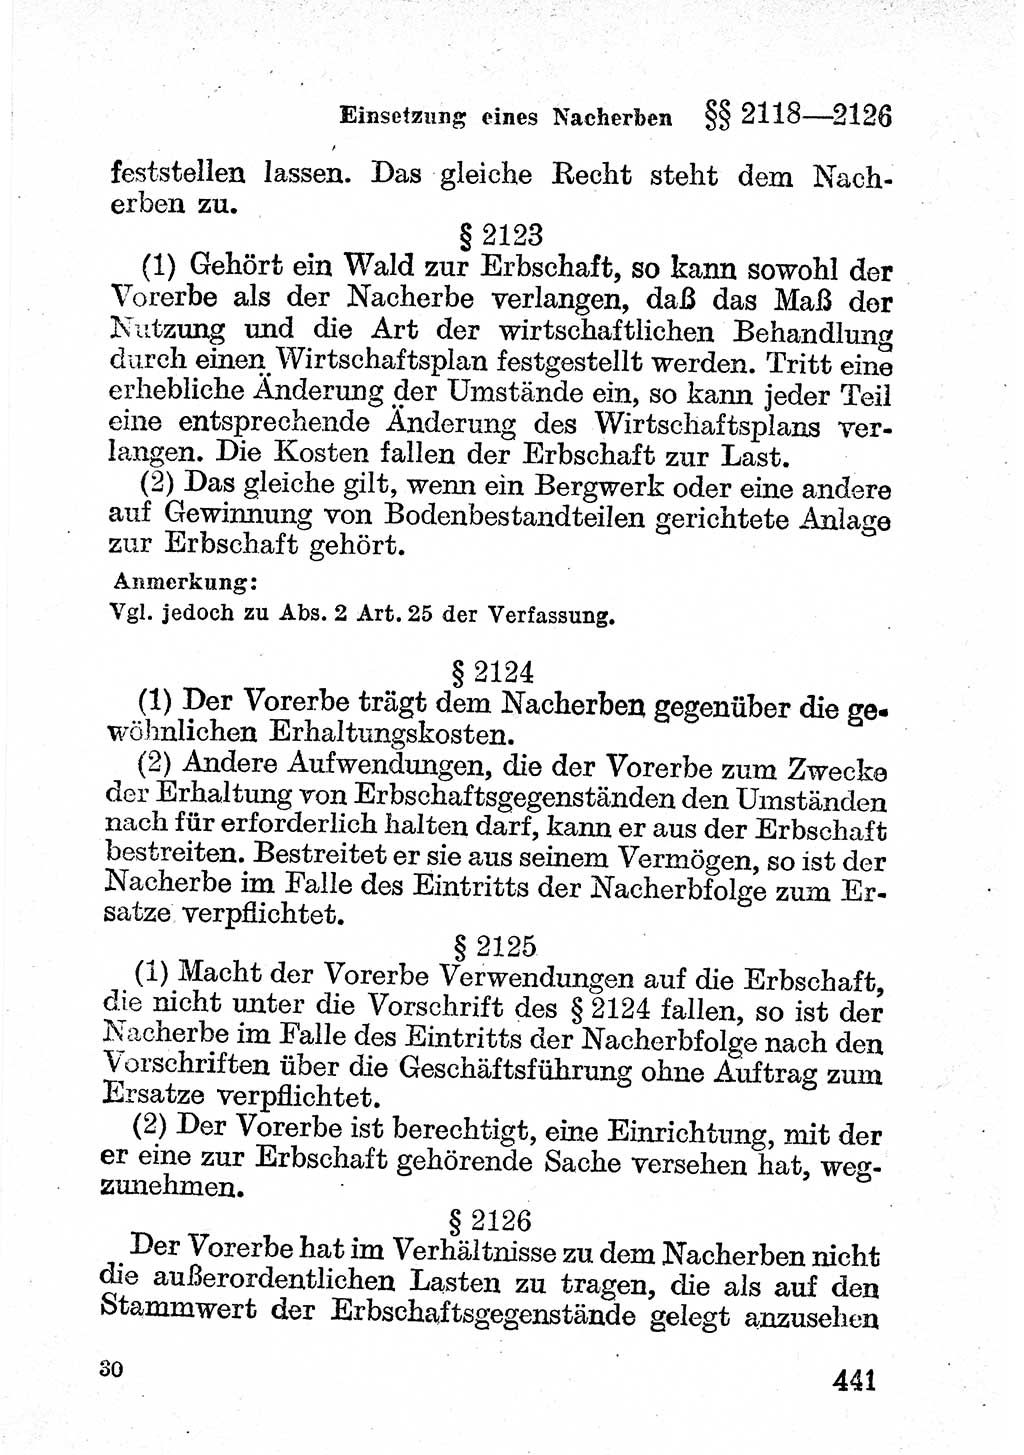 Bürgerliches Gesetzbuch (BGB) nebst wichtigen Nebengesetzen [Deutsche Demokratische Republik (DDR)] 1956, Seite 441 (BGB Nebenges. DDR 1956, S. 441)